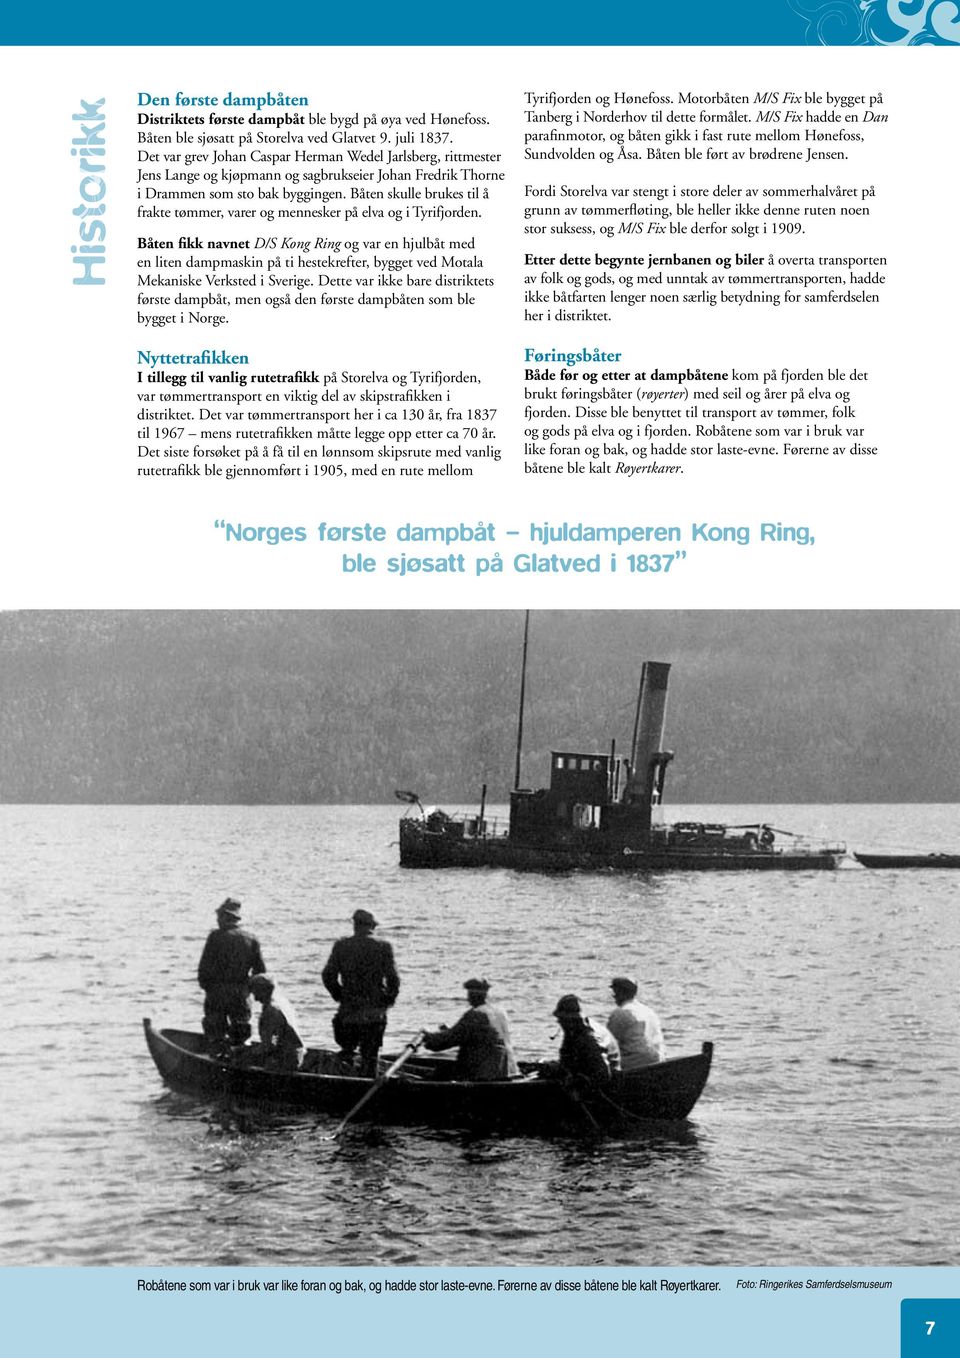 Båten skulle brukes til å frakte tømmer, varer og mennesker på elva og i Tyrifjorden.